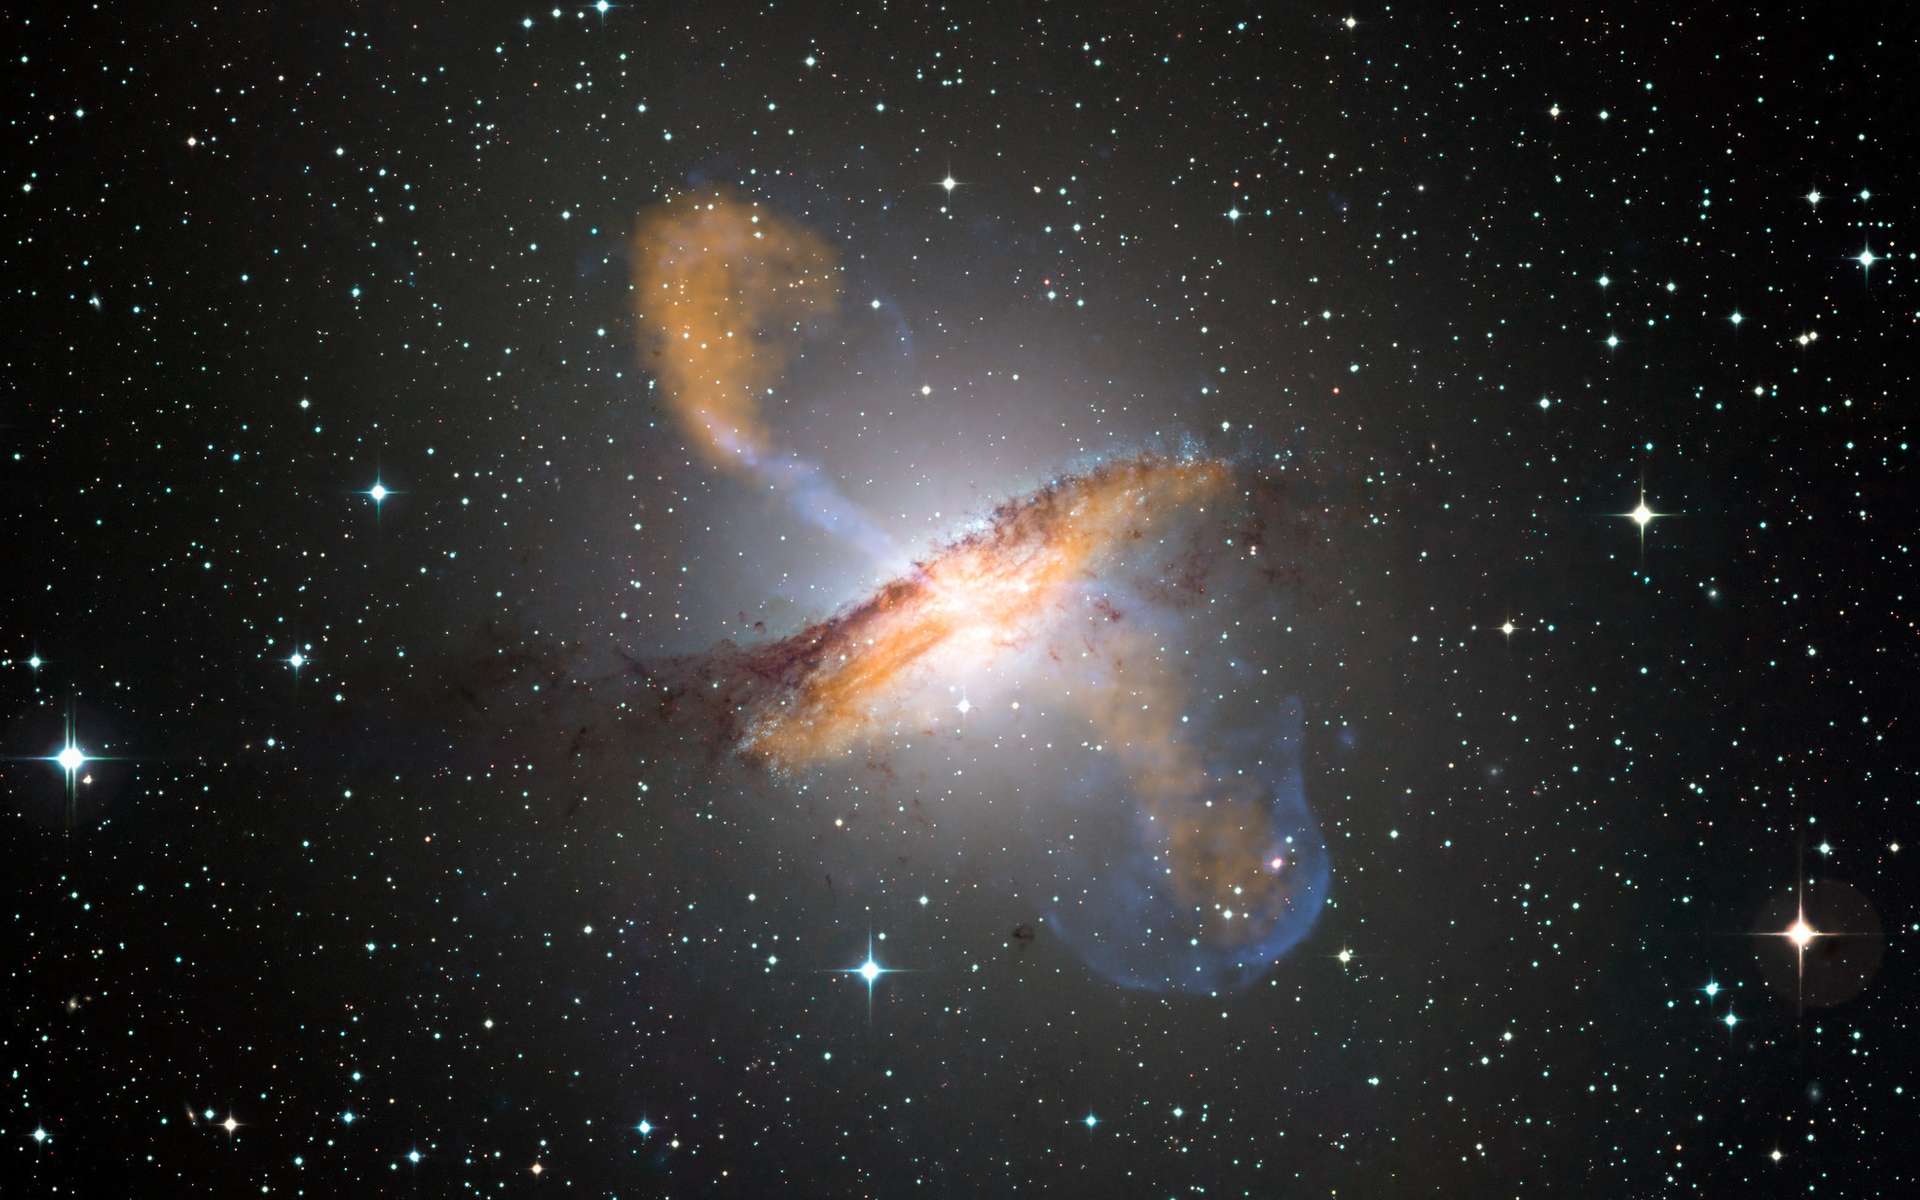 Image composite couleur de Centaurus A, révélant les lobes et les jets émanant du trou noir central de la galaxie active. Il s'agit d'un composite d'images obtenues avec trois instruments, fonctionnant à des longueurs d'onde très différentes. Les données submillimétriques à 870 microns, de Laboca sur Apex, sont indiquées en orange. Les données de rayons X de l'observatoire de rayons X Chandra sont indiquées en bleu. Les données de lumière visible de l'imageur à champ large (WFI) sur le télescope MPG/ESO de 2,2 m situé à La Silla, au Chili, montrent les étoiles et la bande de poussière caractéristique de la galaxie dans des couleurs proches de la « vraie couleur ». © ESO/WFI (optique) ; MPIfR/ESO/Apex/A.Weiss et al., (submillimétrique) ; Nasa/CXC/CfA/R.Kraft et al., (rayons X)